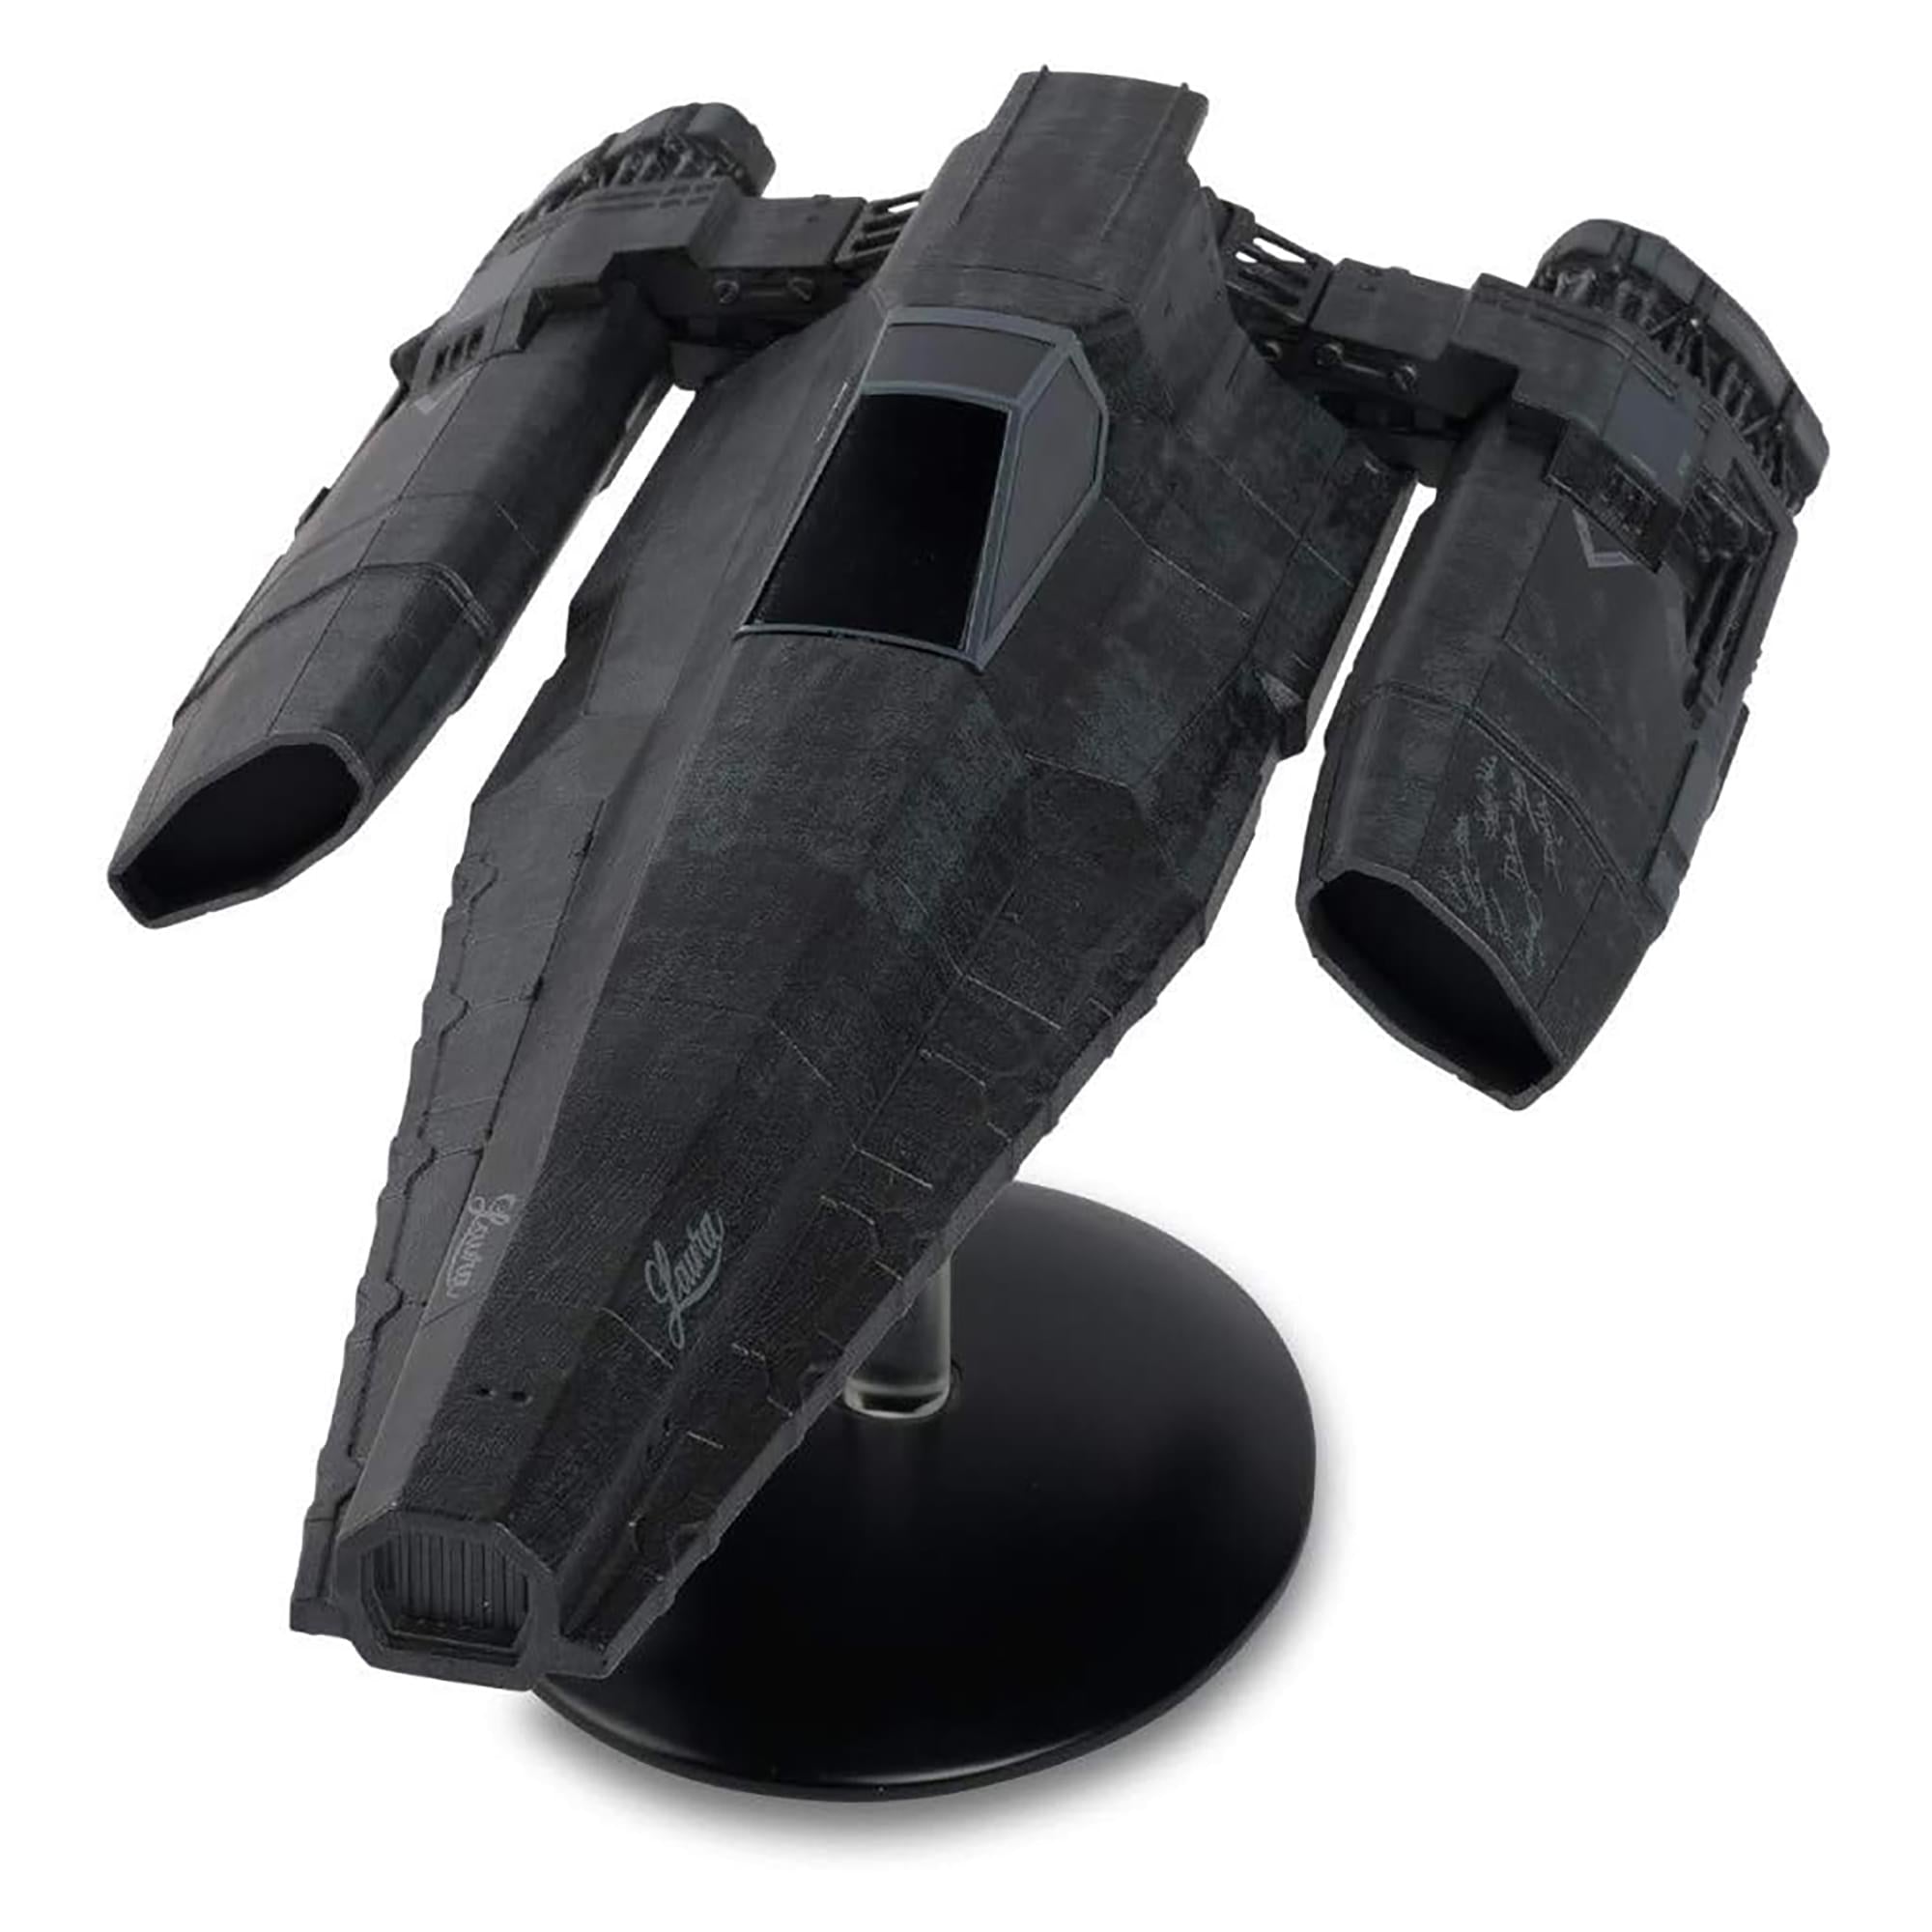 Battlestar Galactica Ship Replica , Blackbird